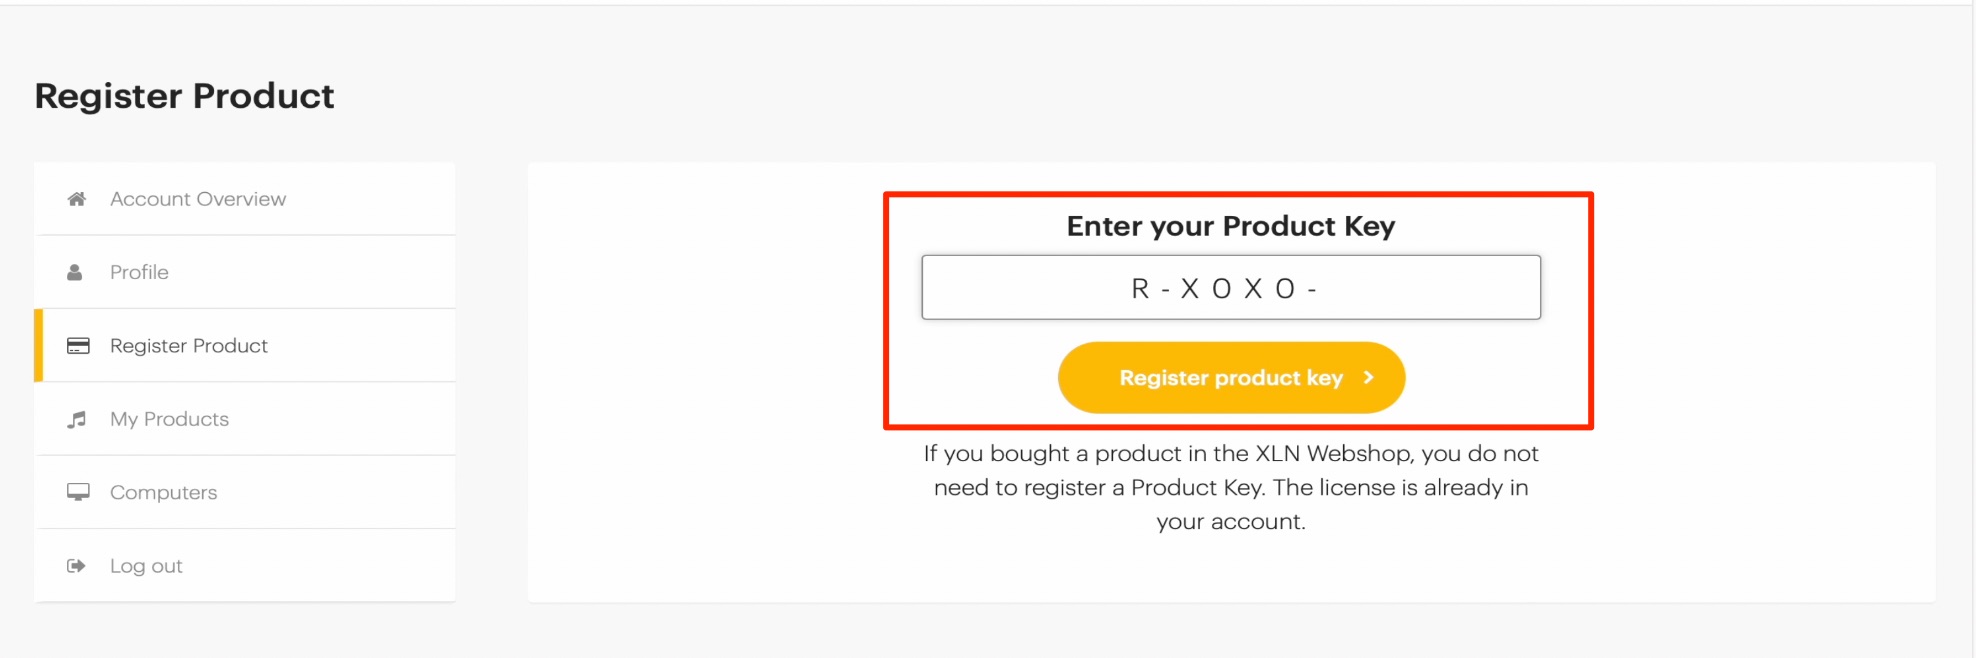 Enter_Product_Key